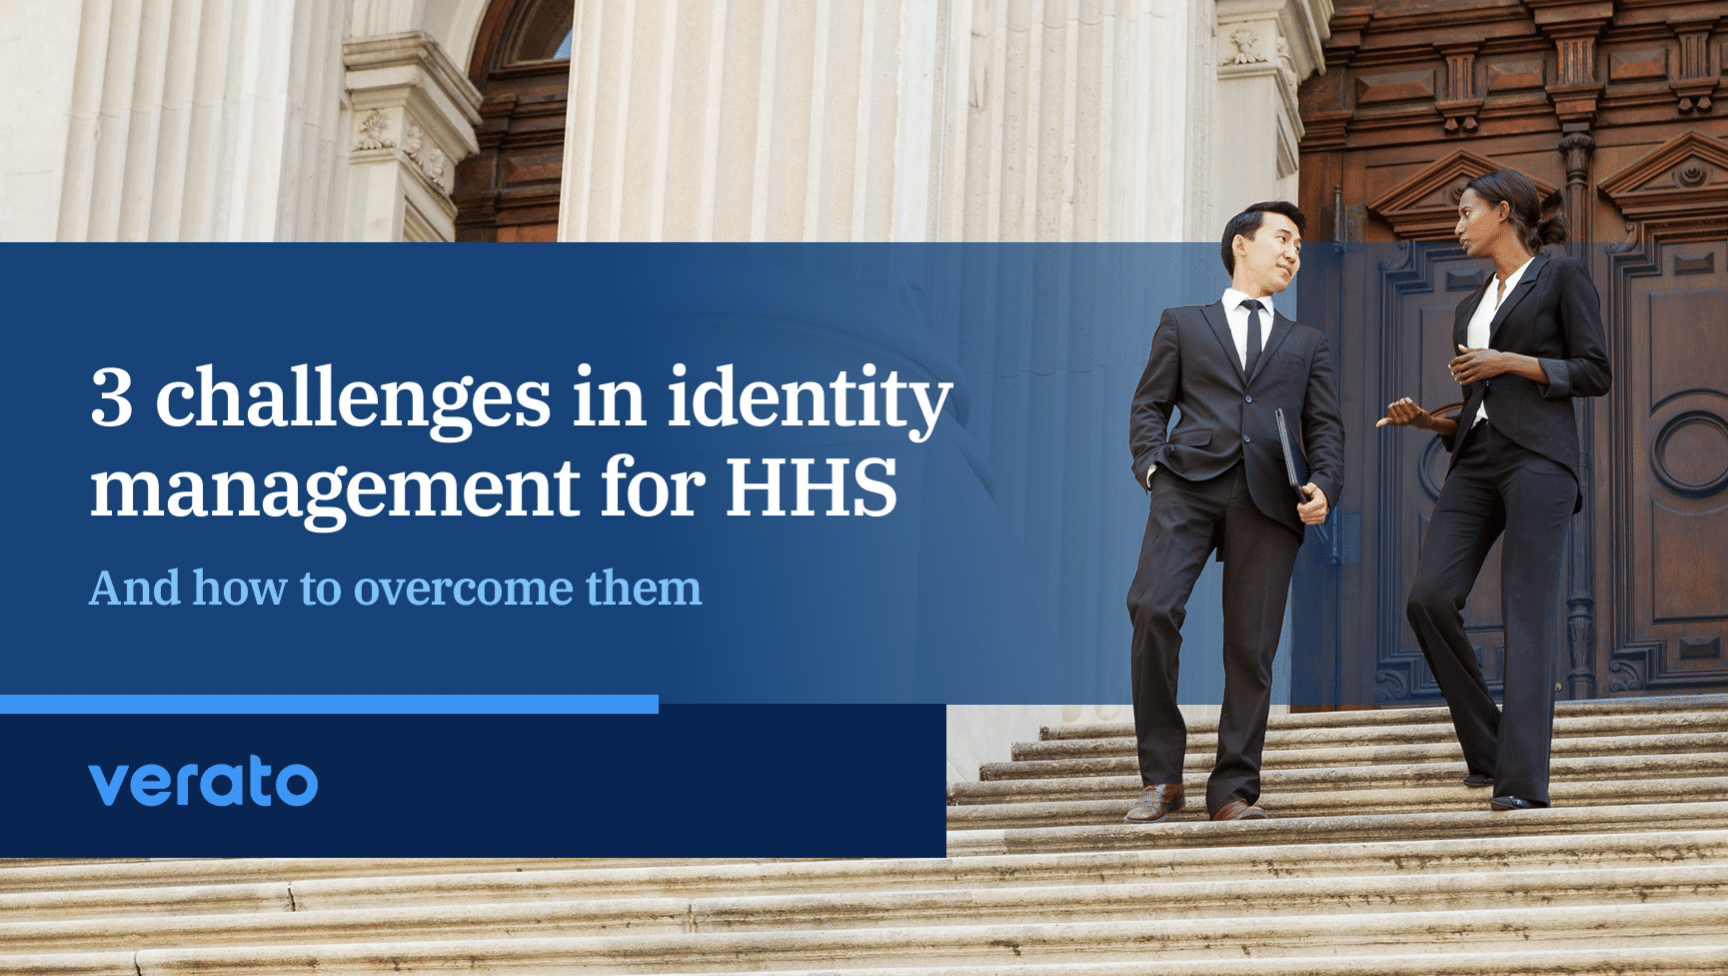 Cómo superar los desafios de gestión de identidades